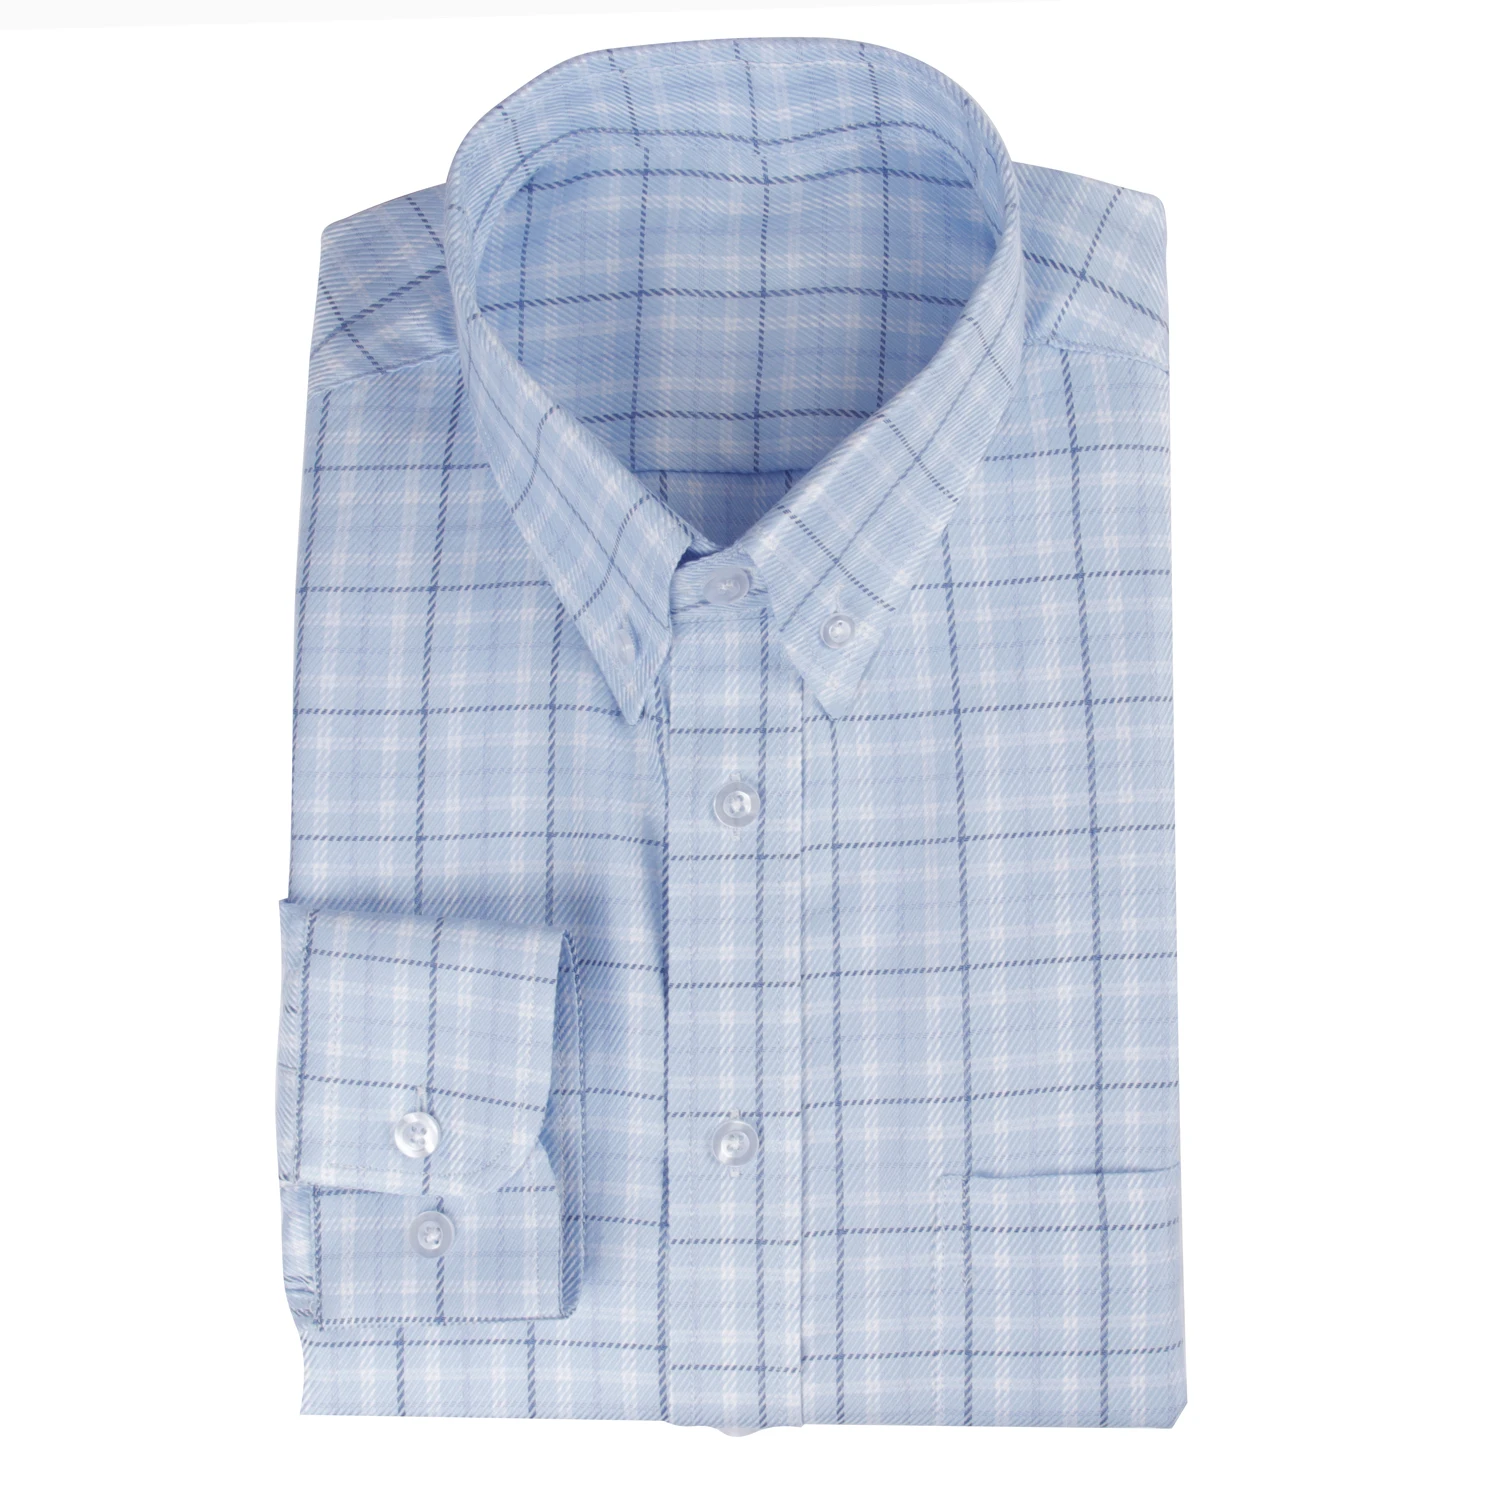 Мужская классическая рубашка по индивидуальному заказу классические рубашки в